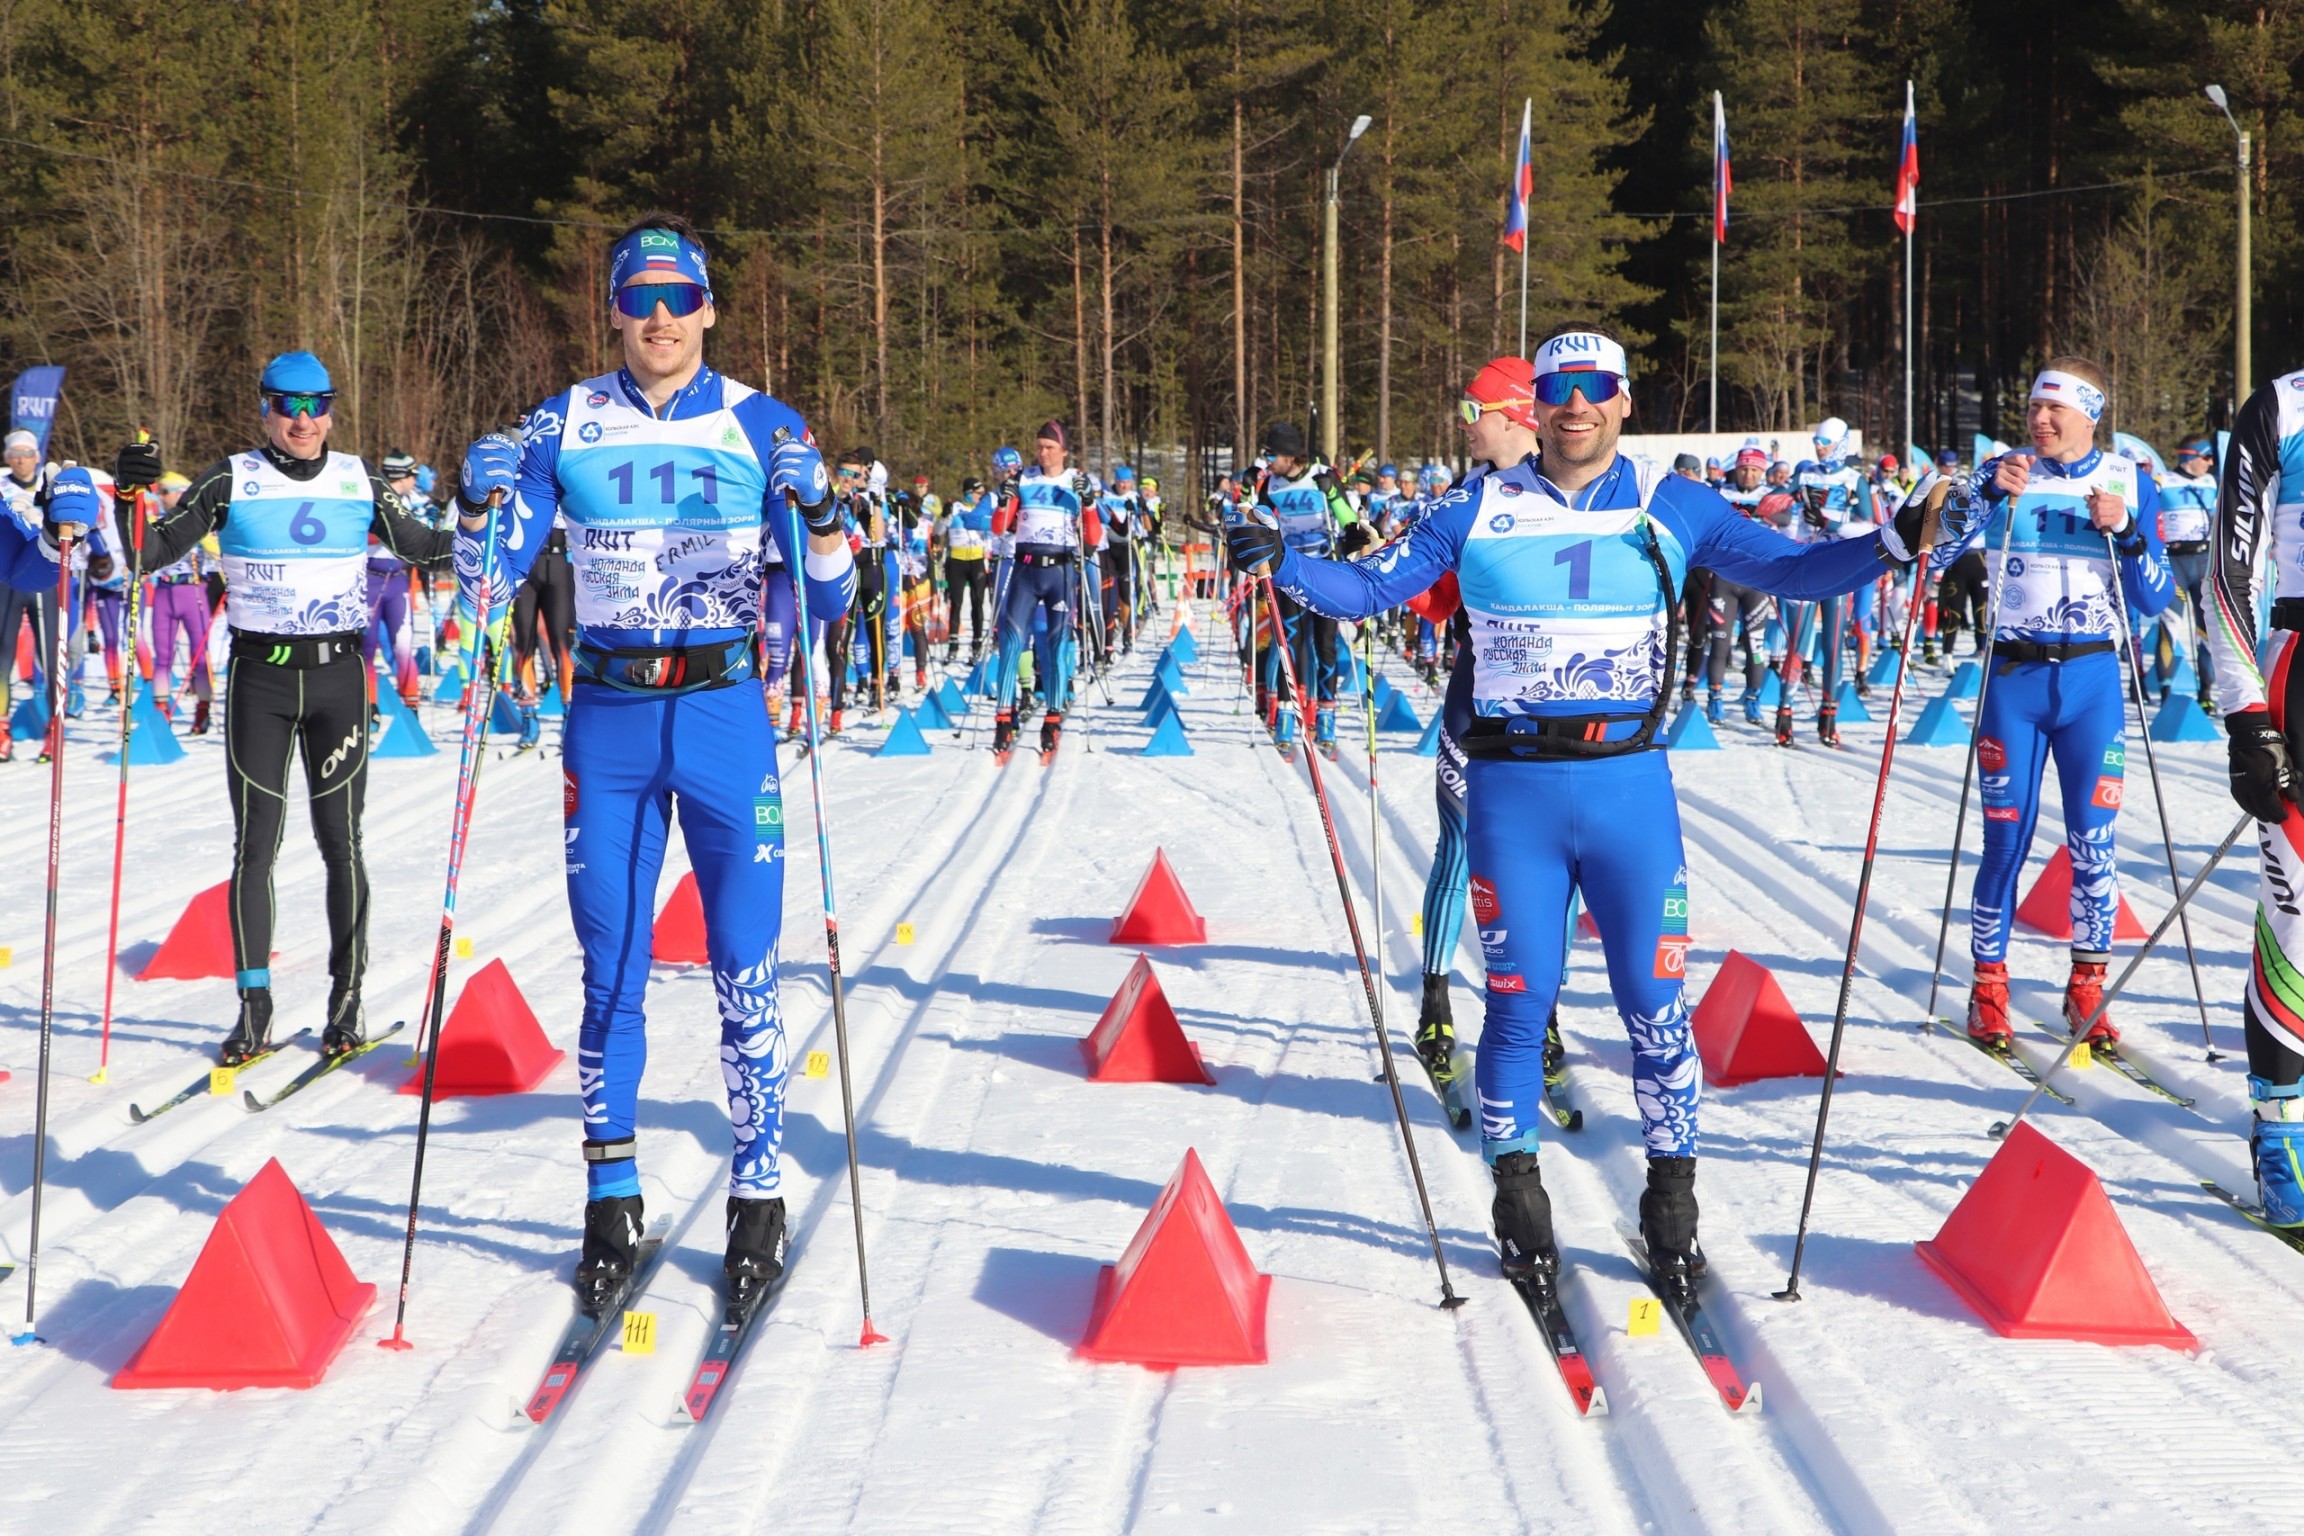 При поддержке Кольской АЭС в Полярных Зорях пройдёт лыжный марафон  с участием свыше 200 спортсменов из ряда регионов России